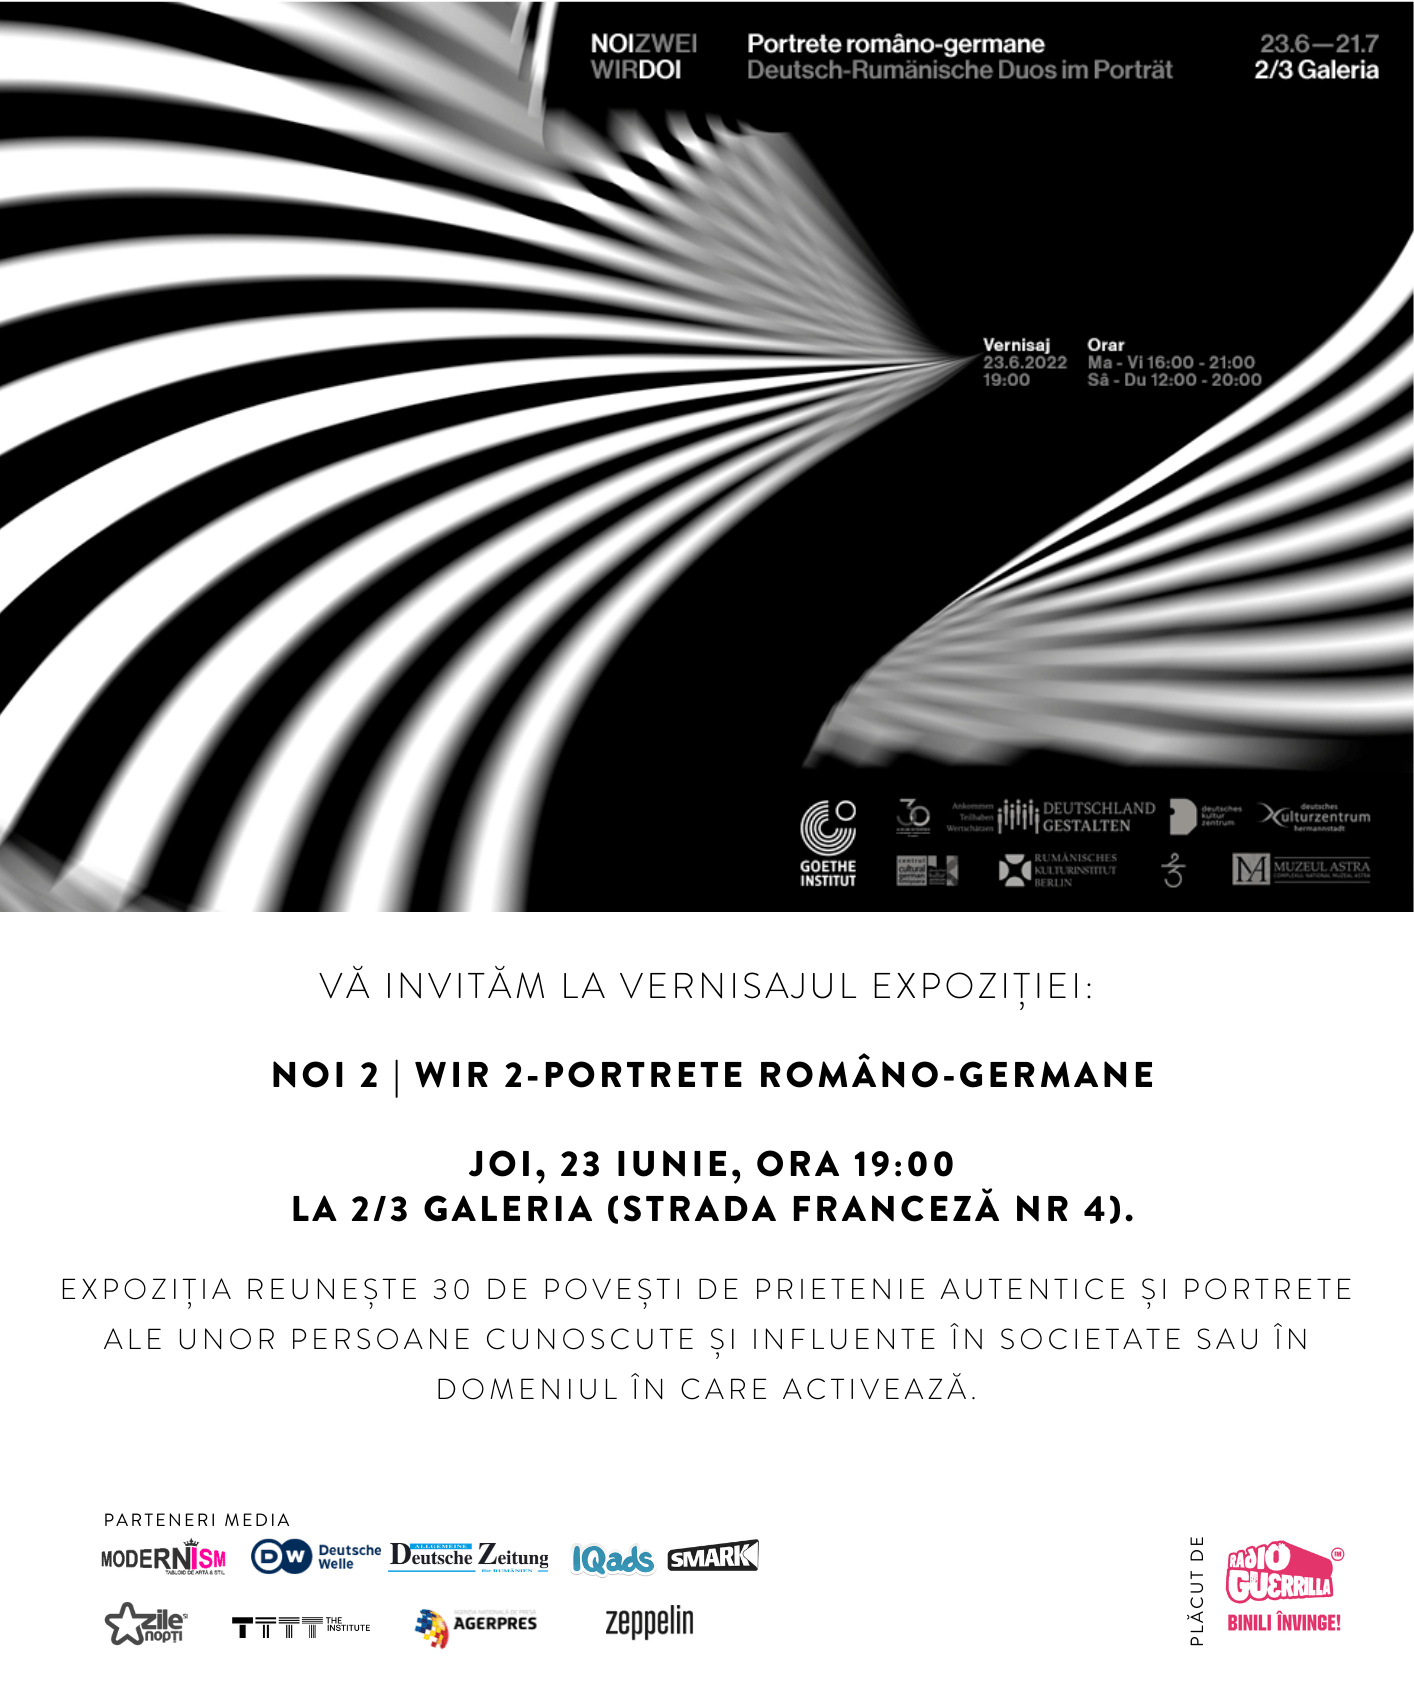 Goethe-Institut celebrează parteneriatul româno-german printr-o expoziție documentară inedită organizată la 2/3 Galeria